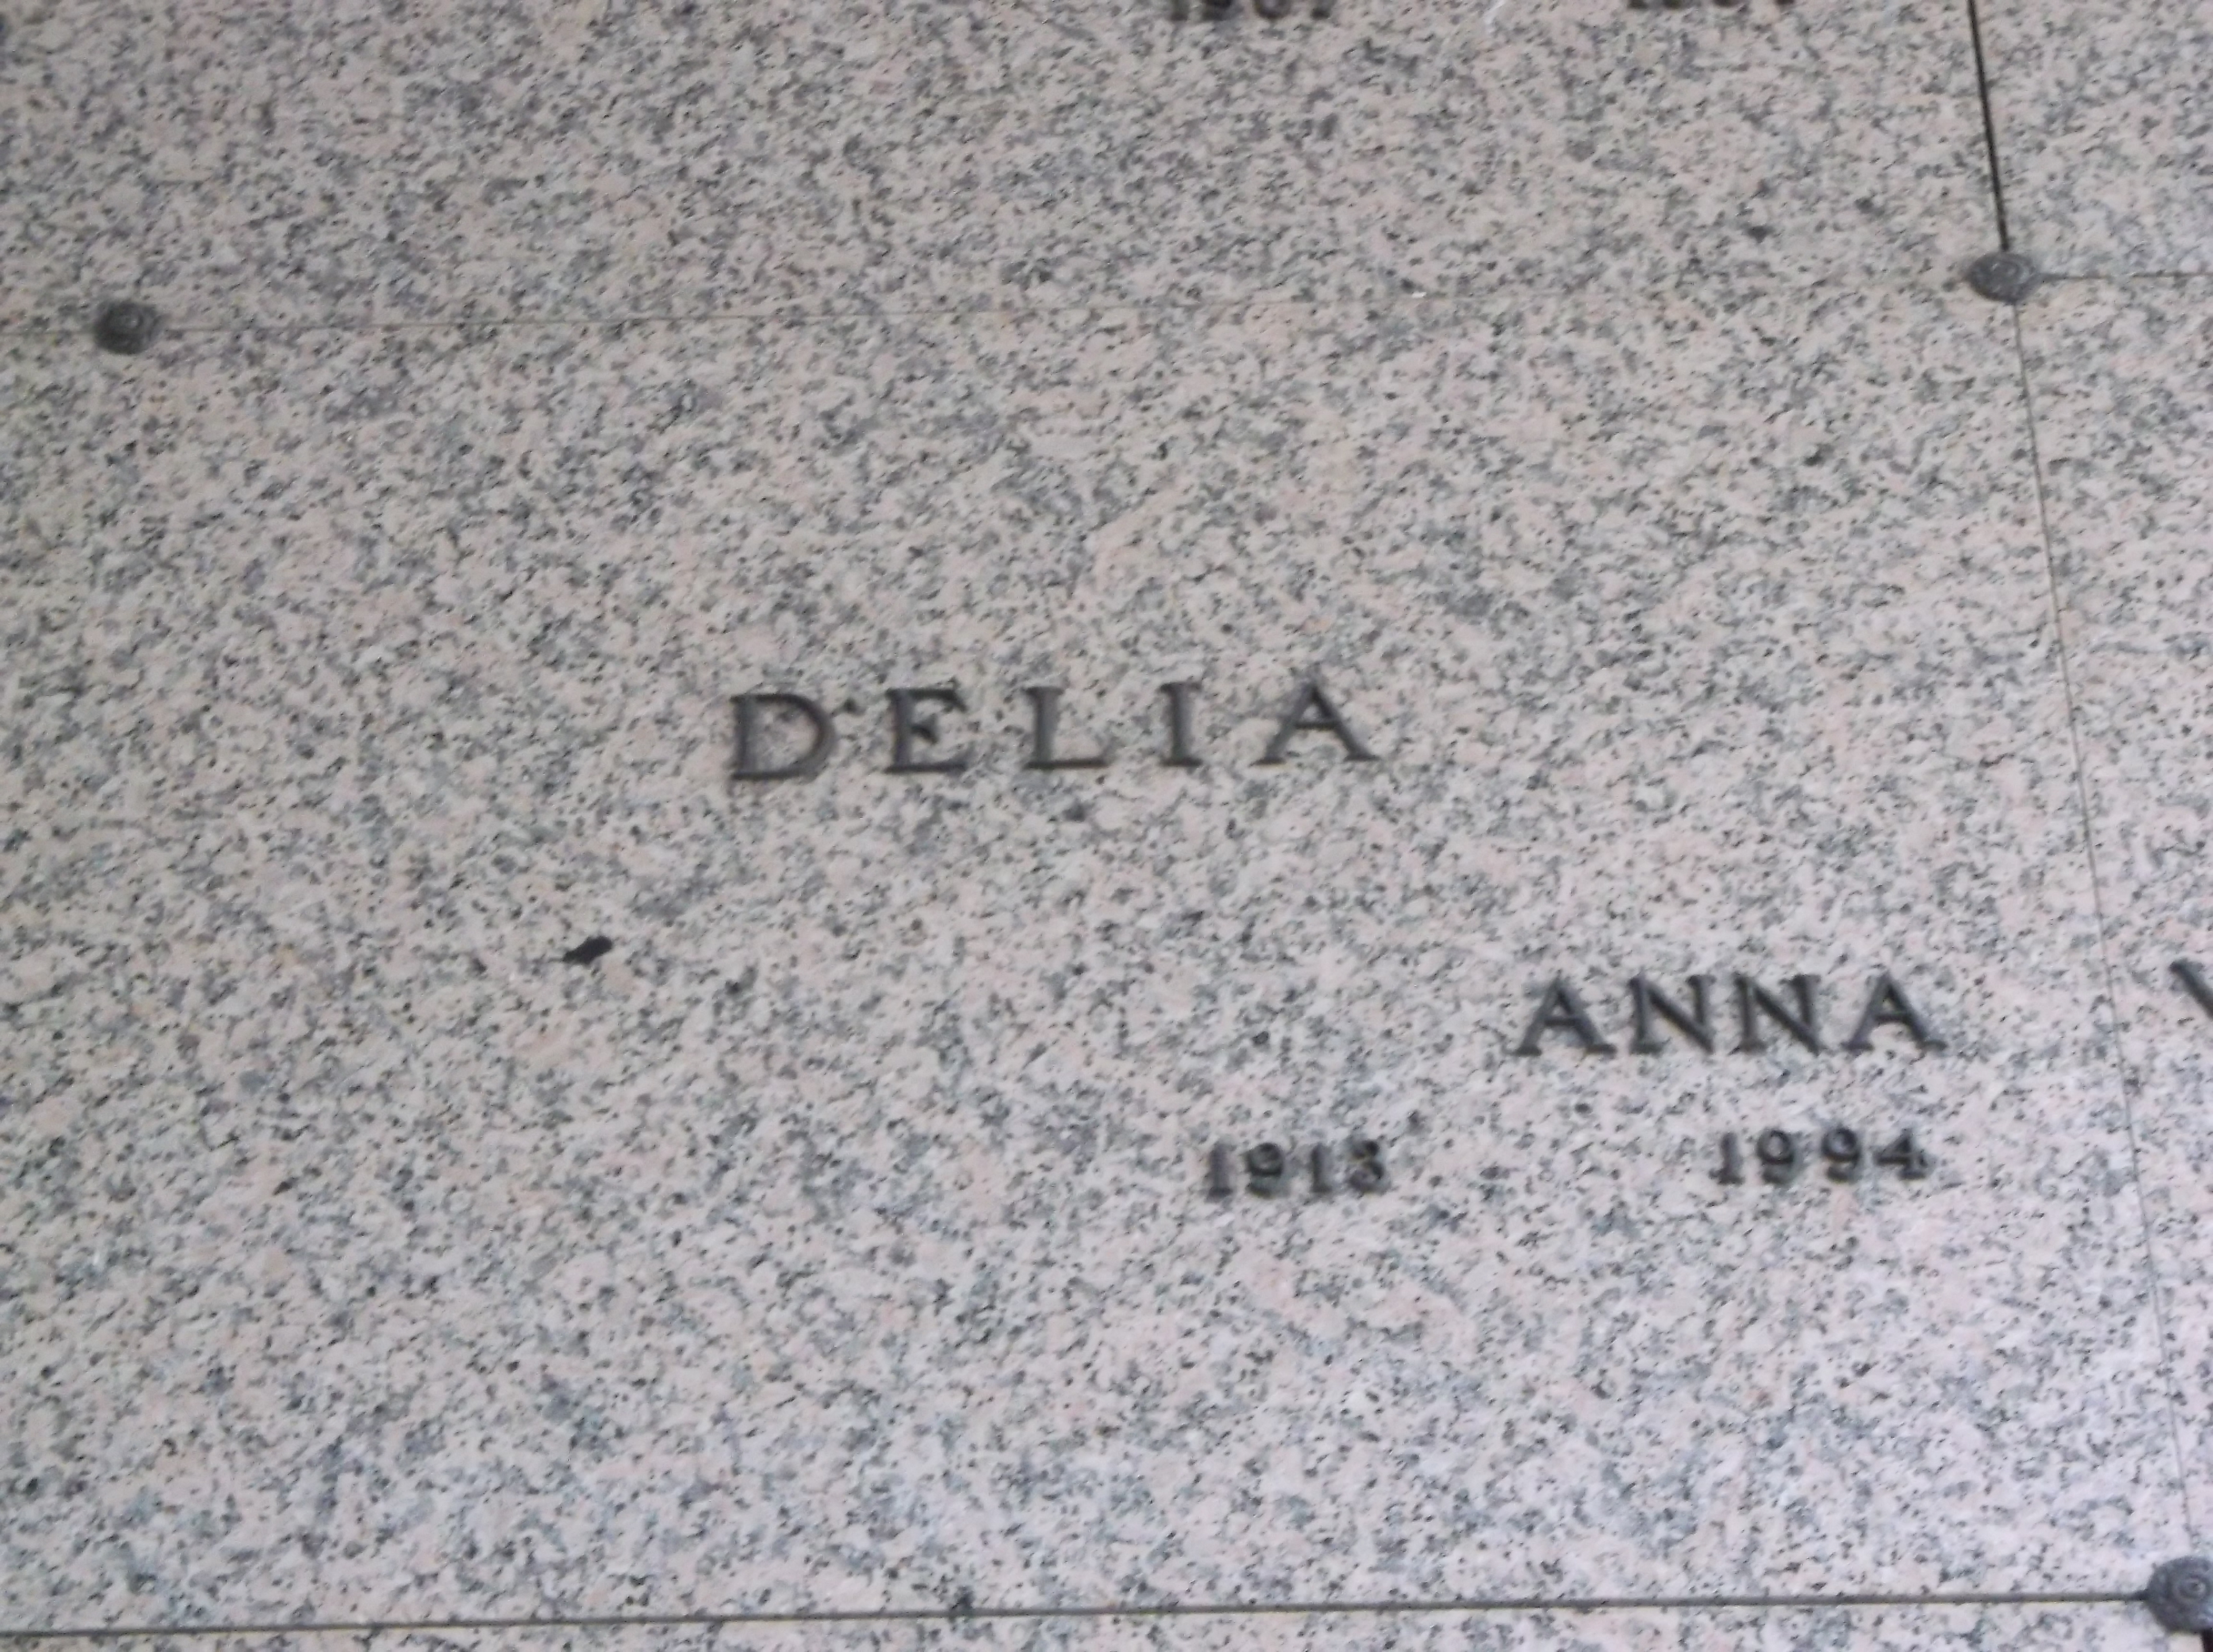 Anna Delia